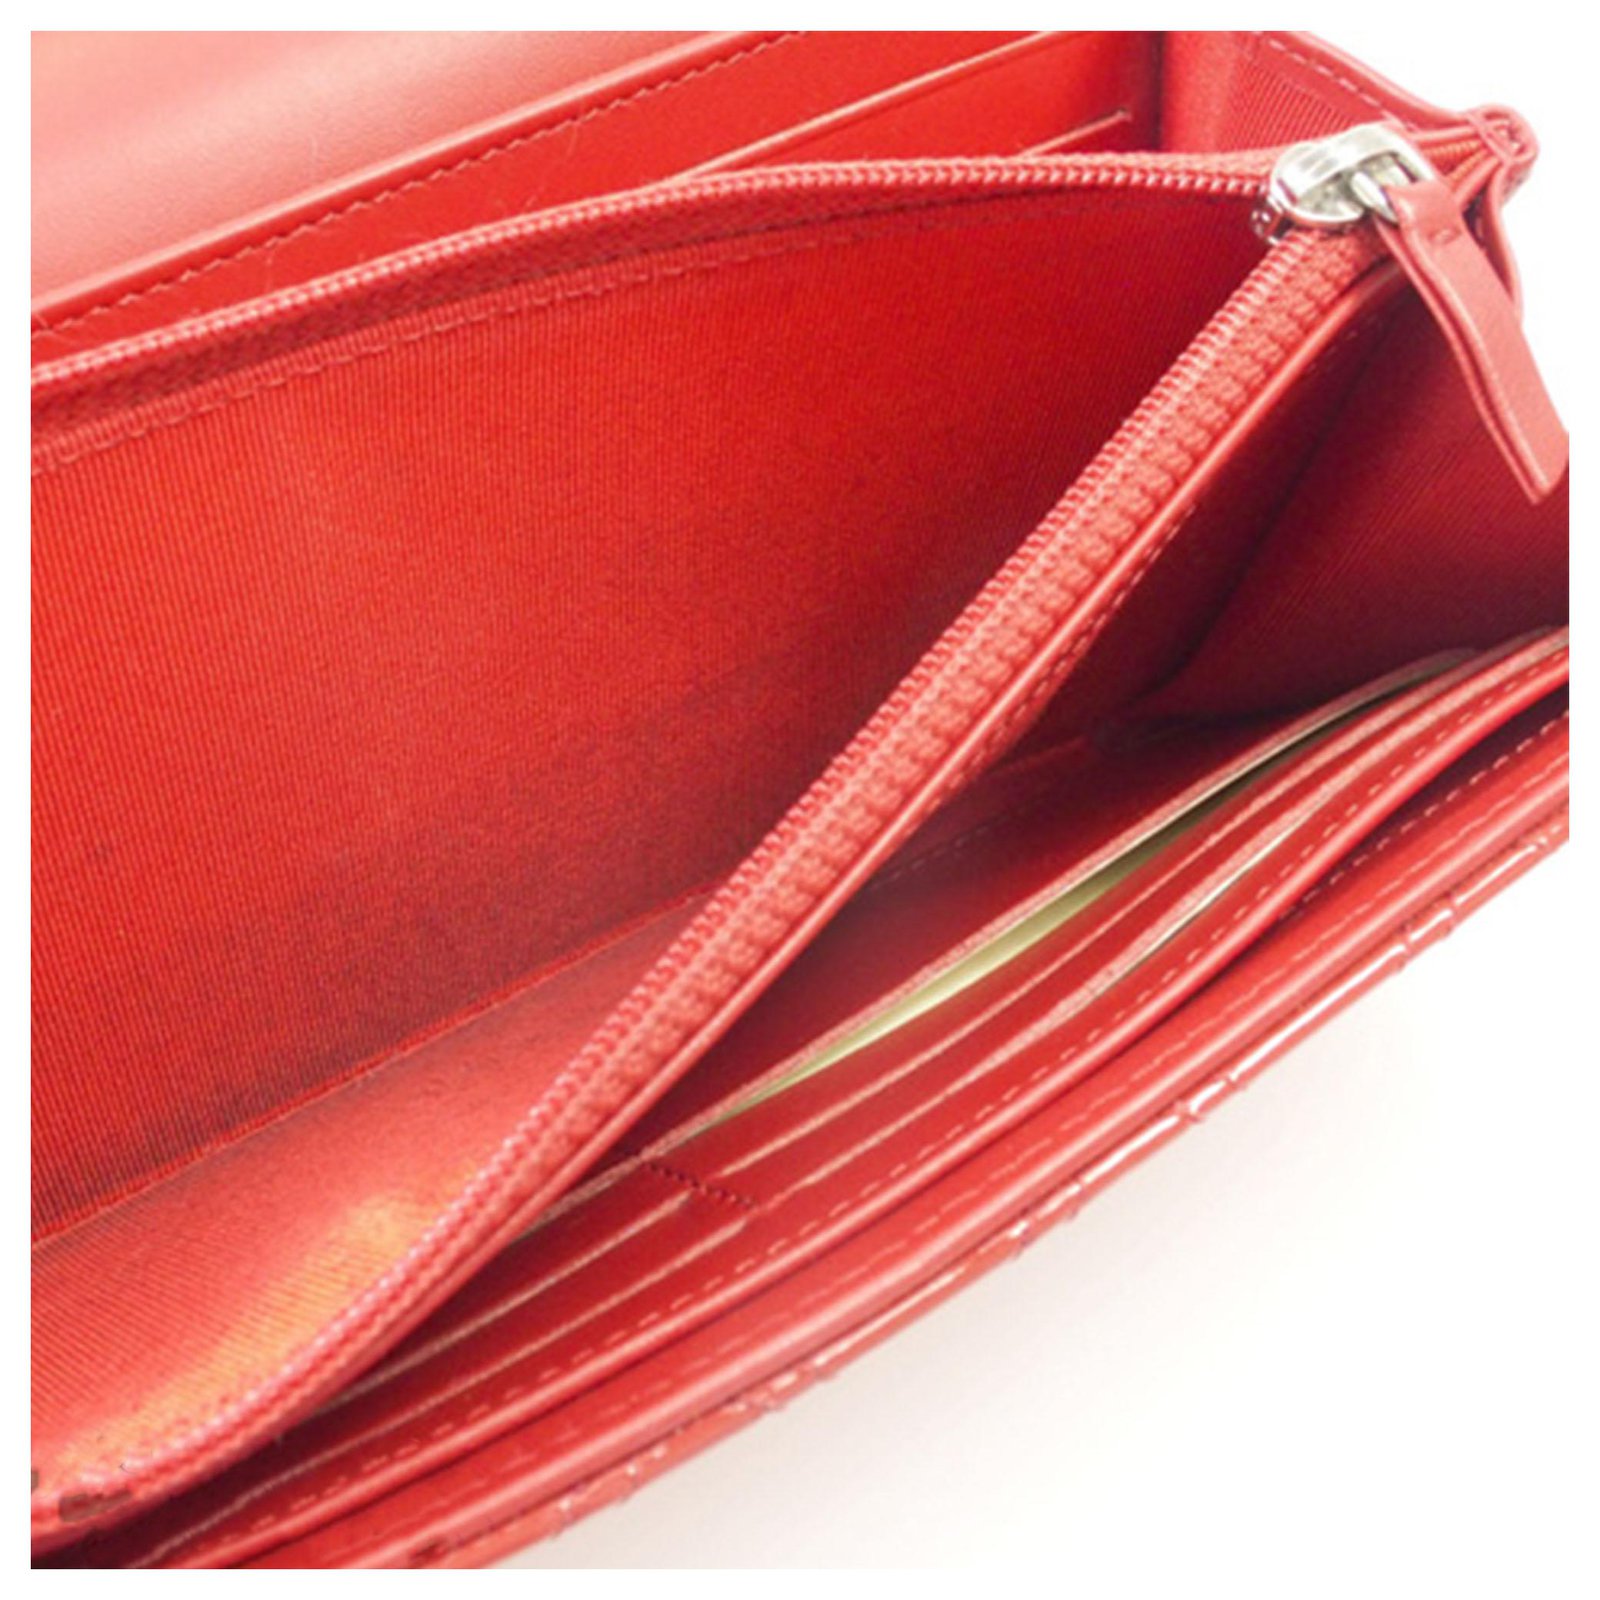 Chanel red leather wallet – FriendshopLondon